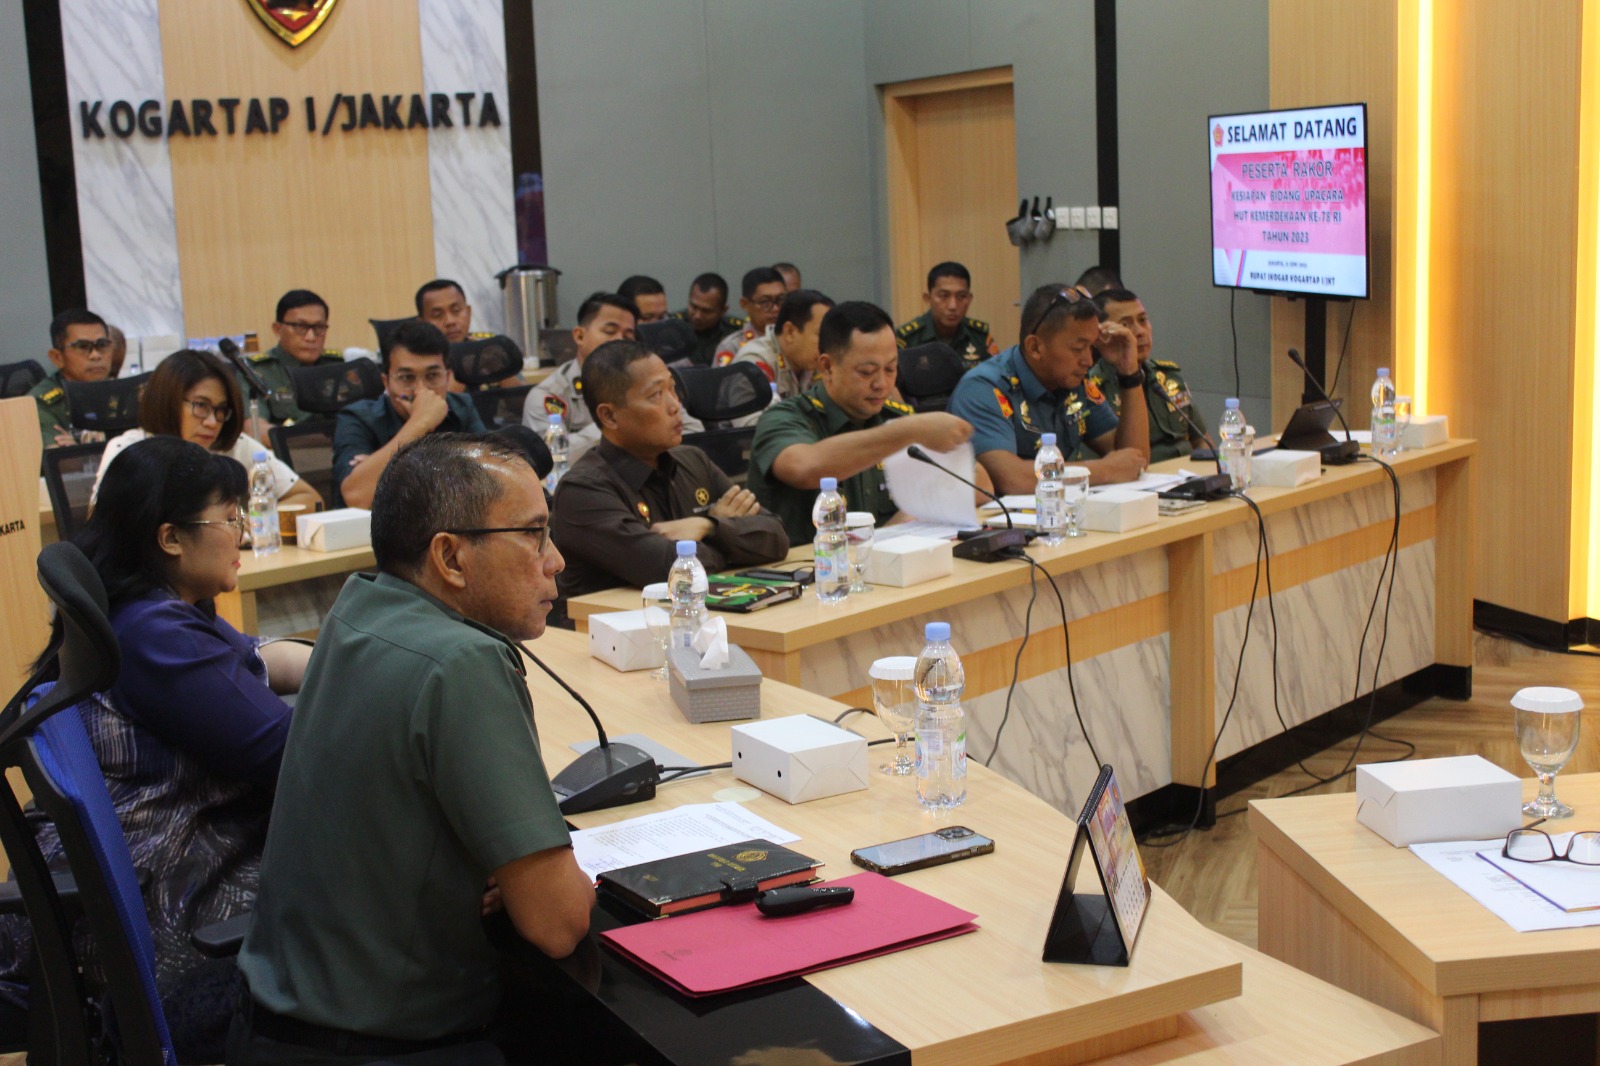 Kogartap I/Jakarta Laksanakan Rapat Koordinasi Kesiapan Bidang Upacara dan Paskibraka Dalam Rangka HUT Ke - 78 Kemerdekaan RI Tahun 2023